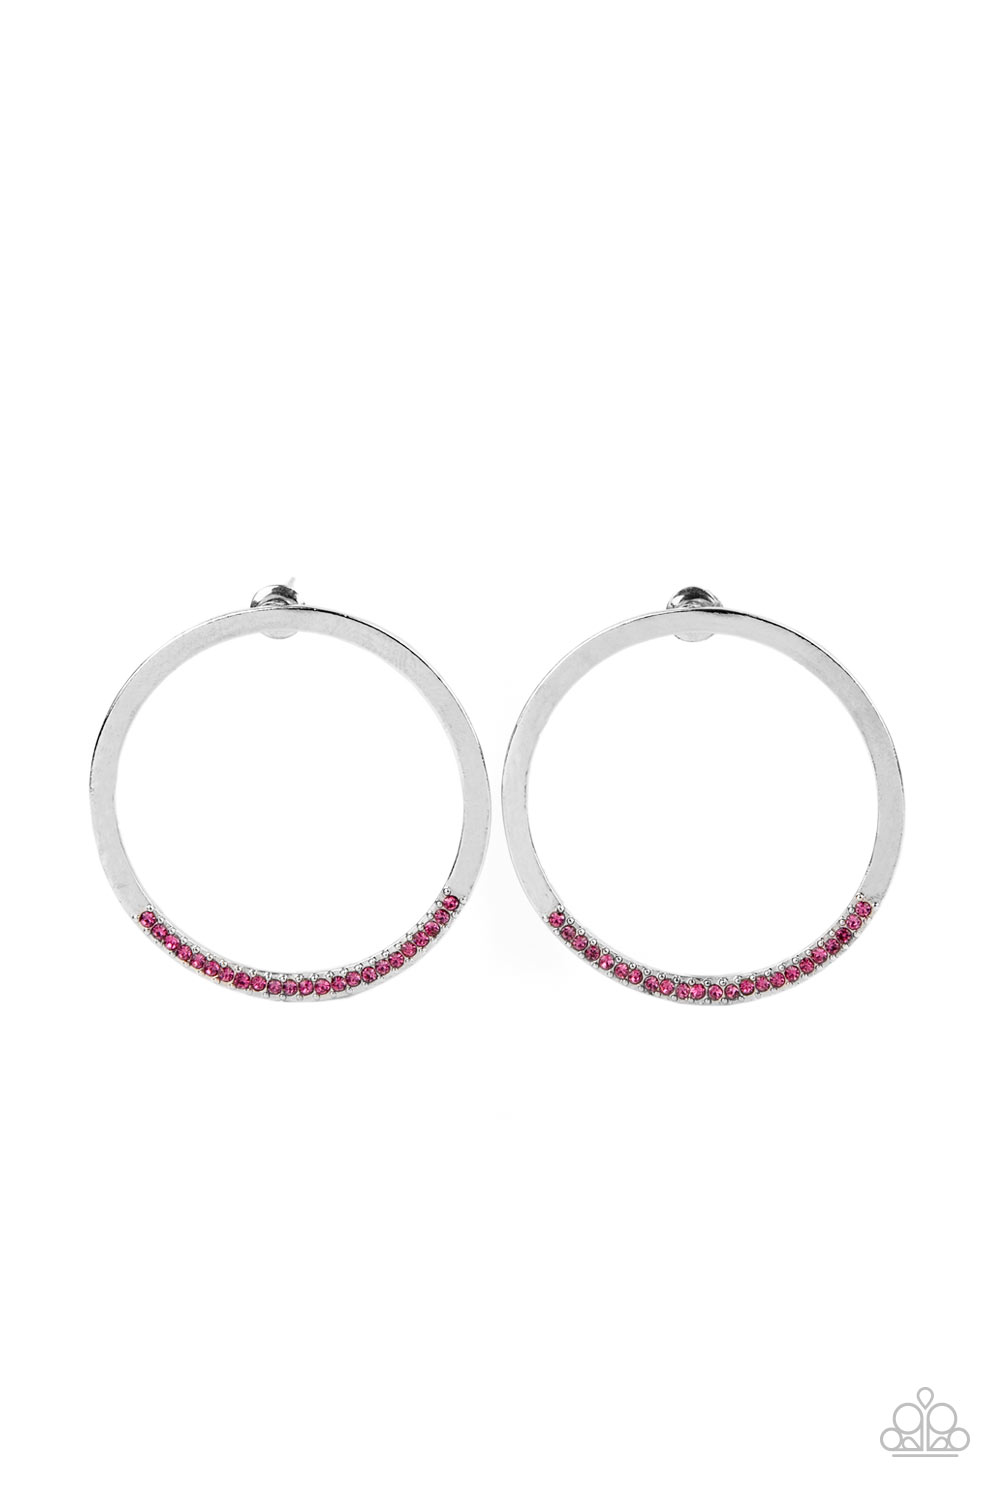 Spot On Opulence Pink-Earrings